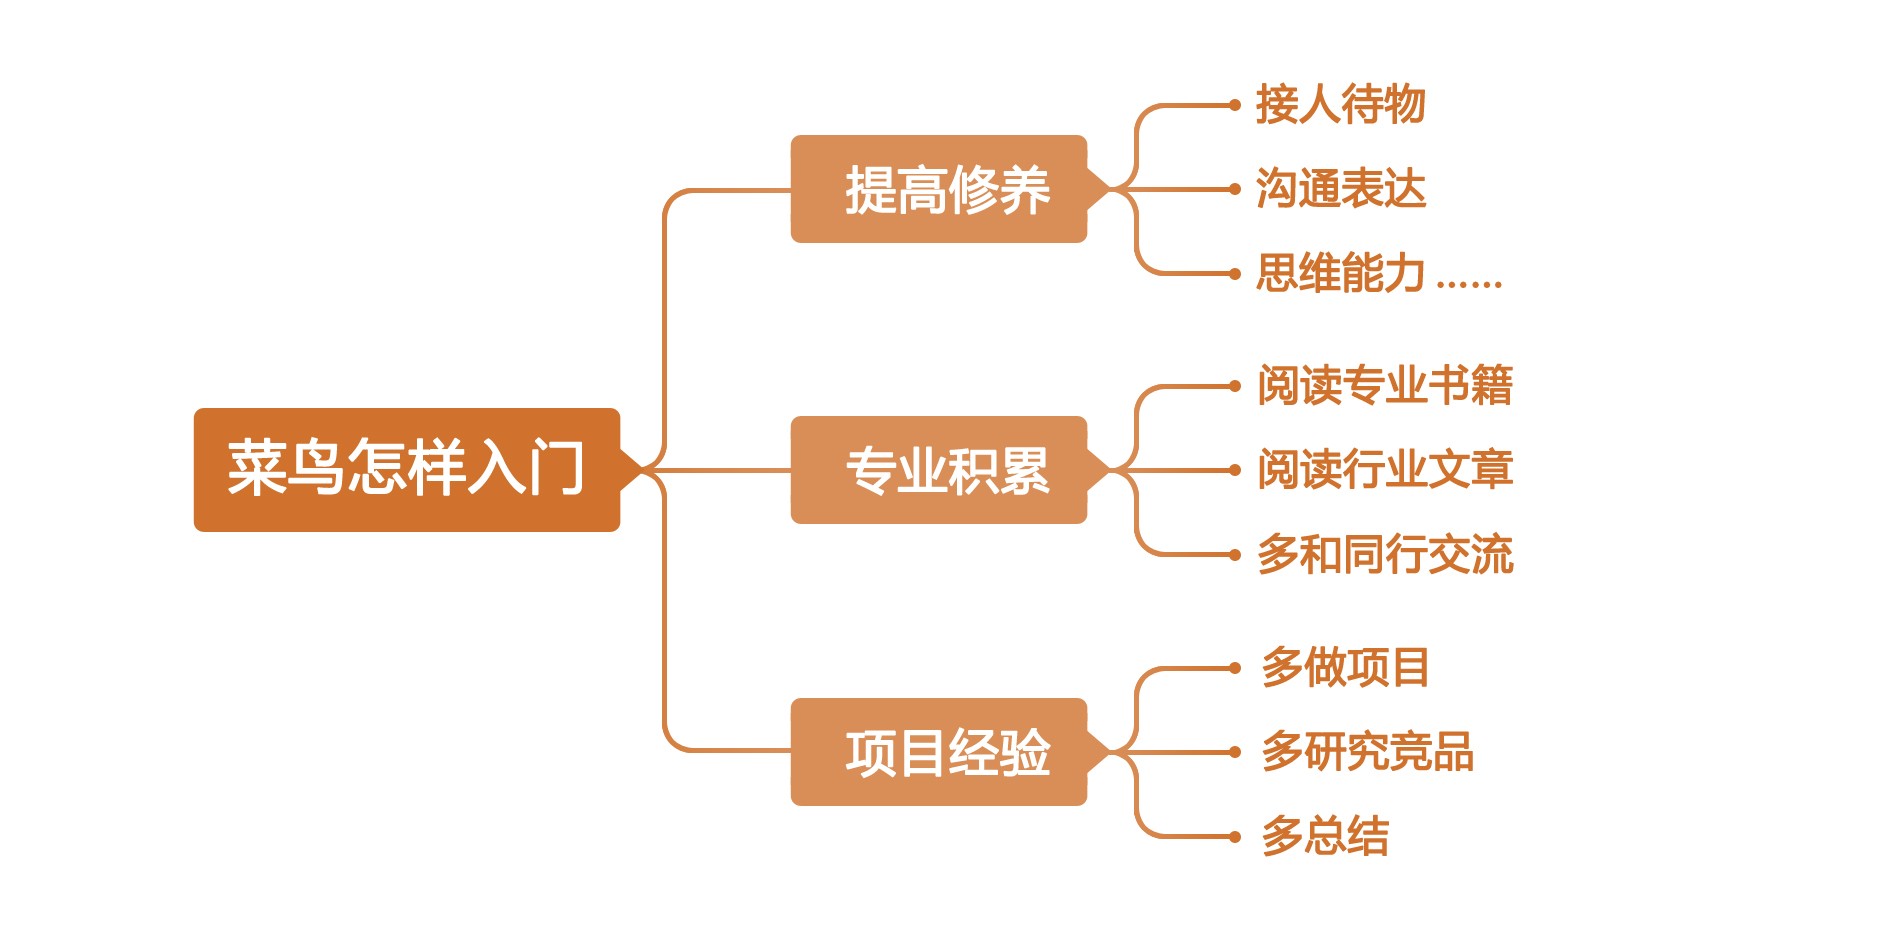 阿里交互设计专家刘津的设计管理之路-艺源科技